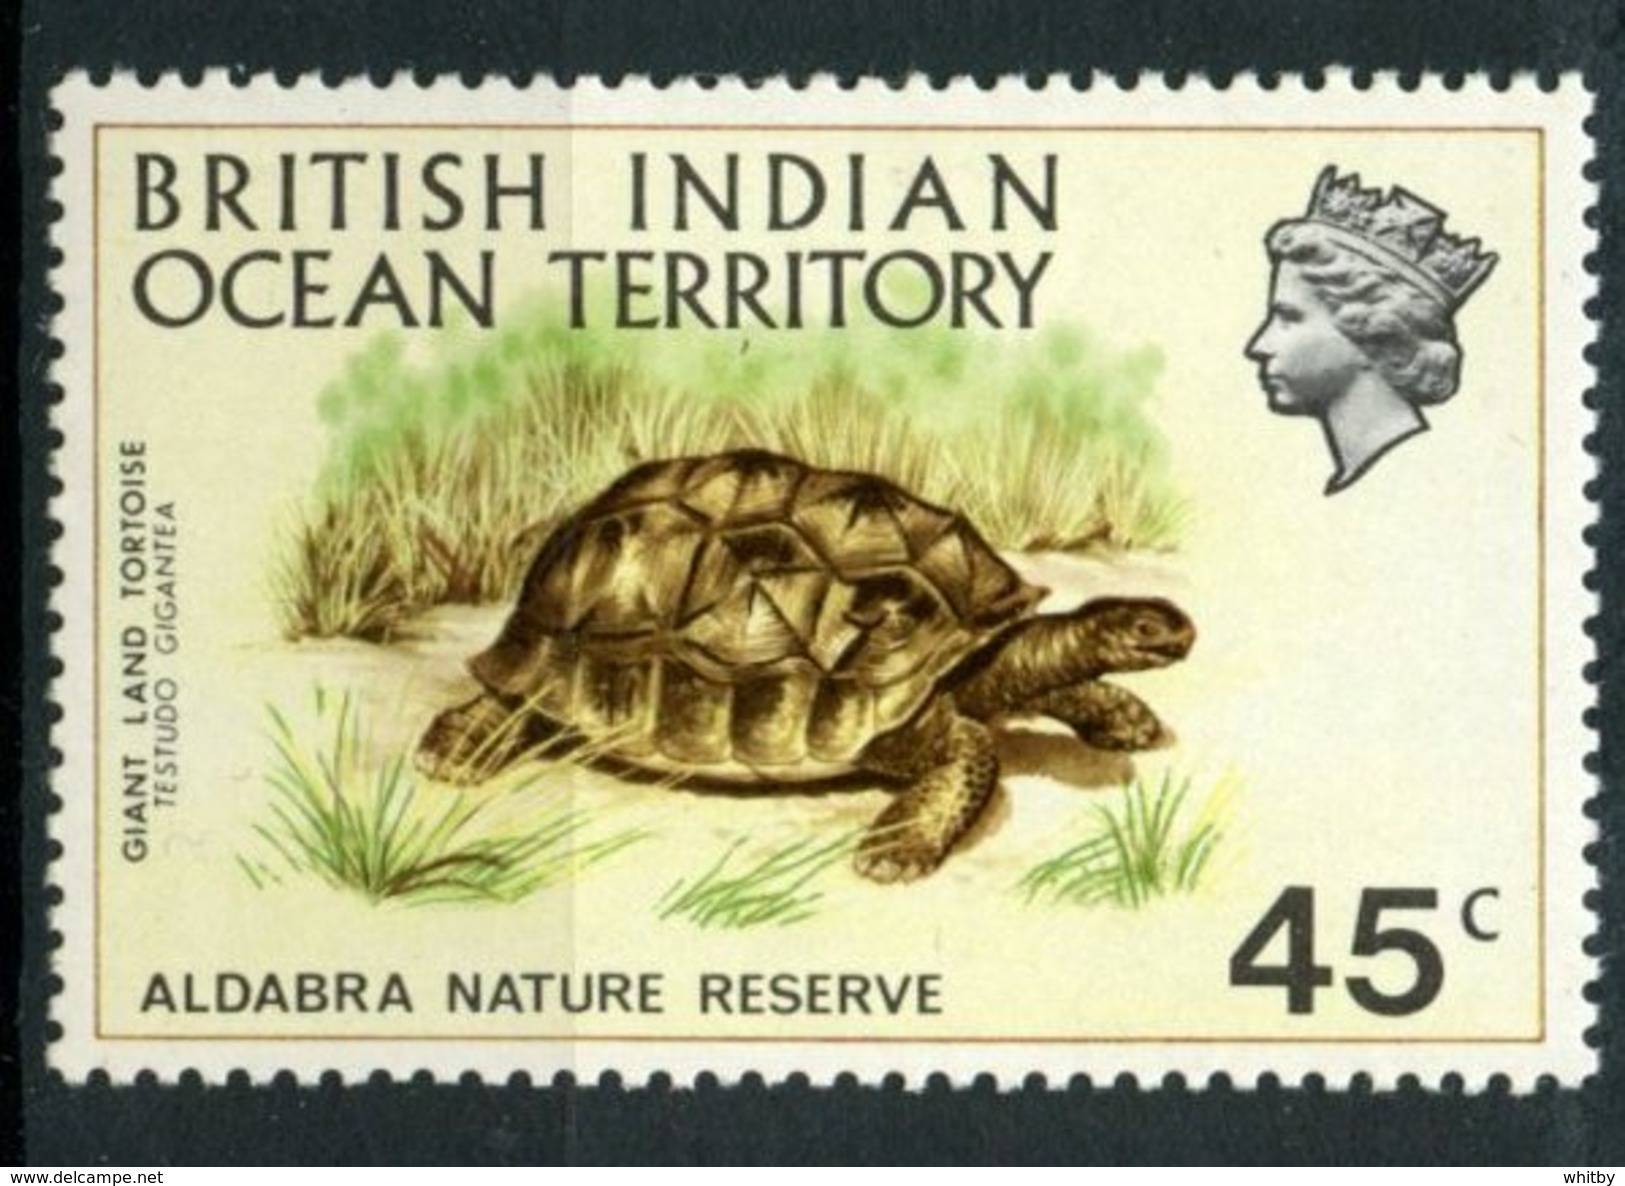 British Indian Ocean Territory 1971 45c Tortoise Issue  #39 MH - Territoire Britannique De L'Océan Indien